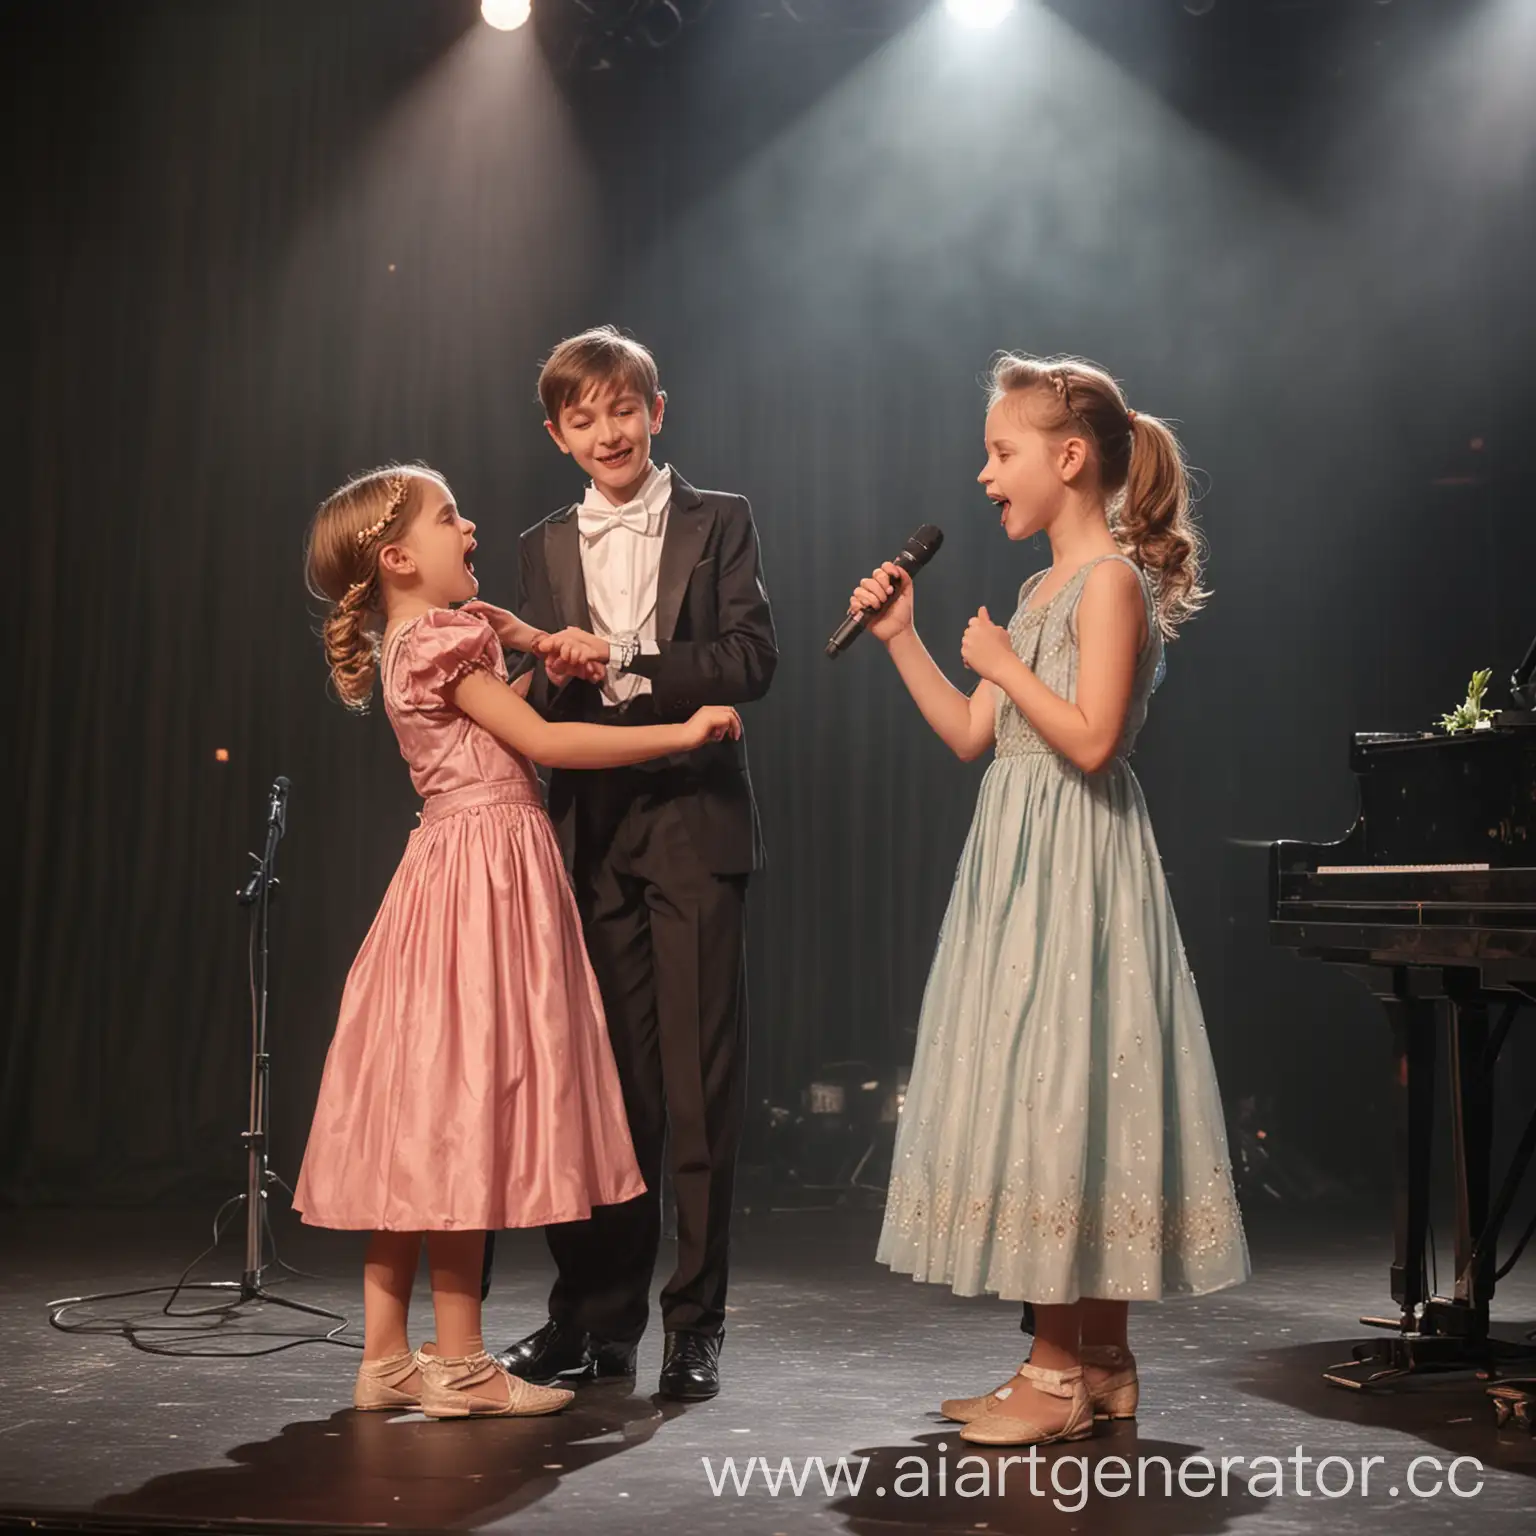 Мальчик и девочка выступают на сцене, мальчик в красивом костюме танцует, а девочка поют в микрофон, вторая девочка играет на фортепиано